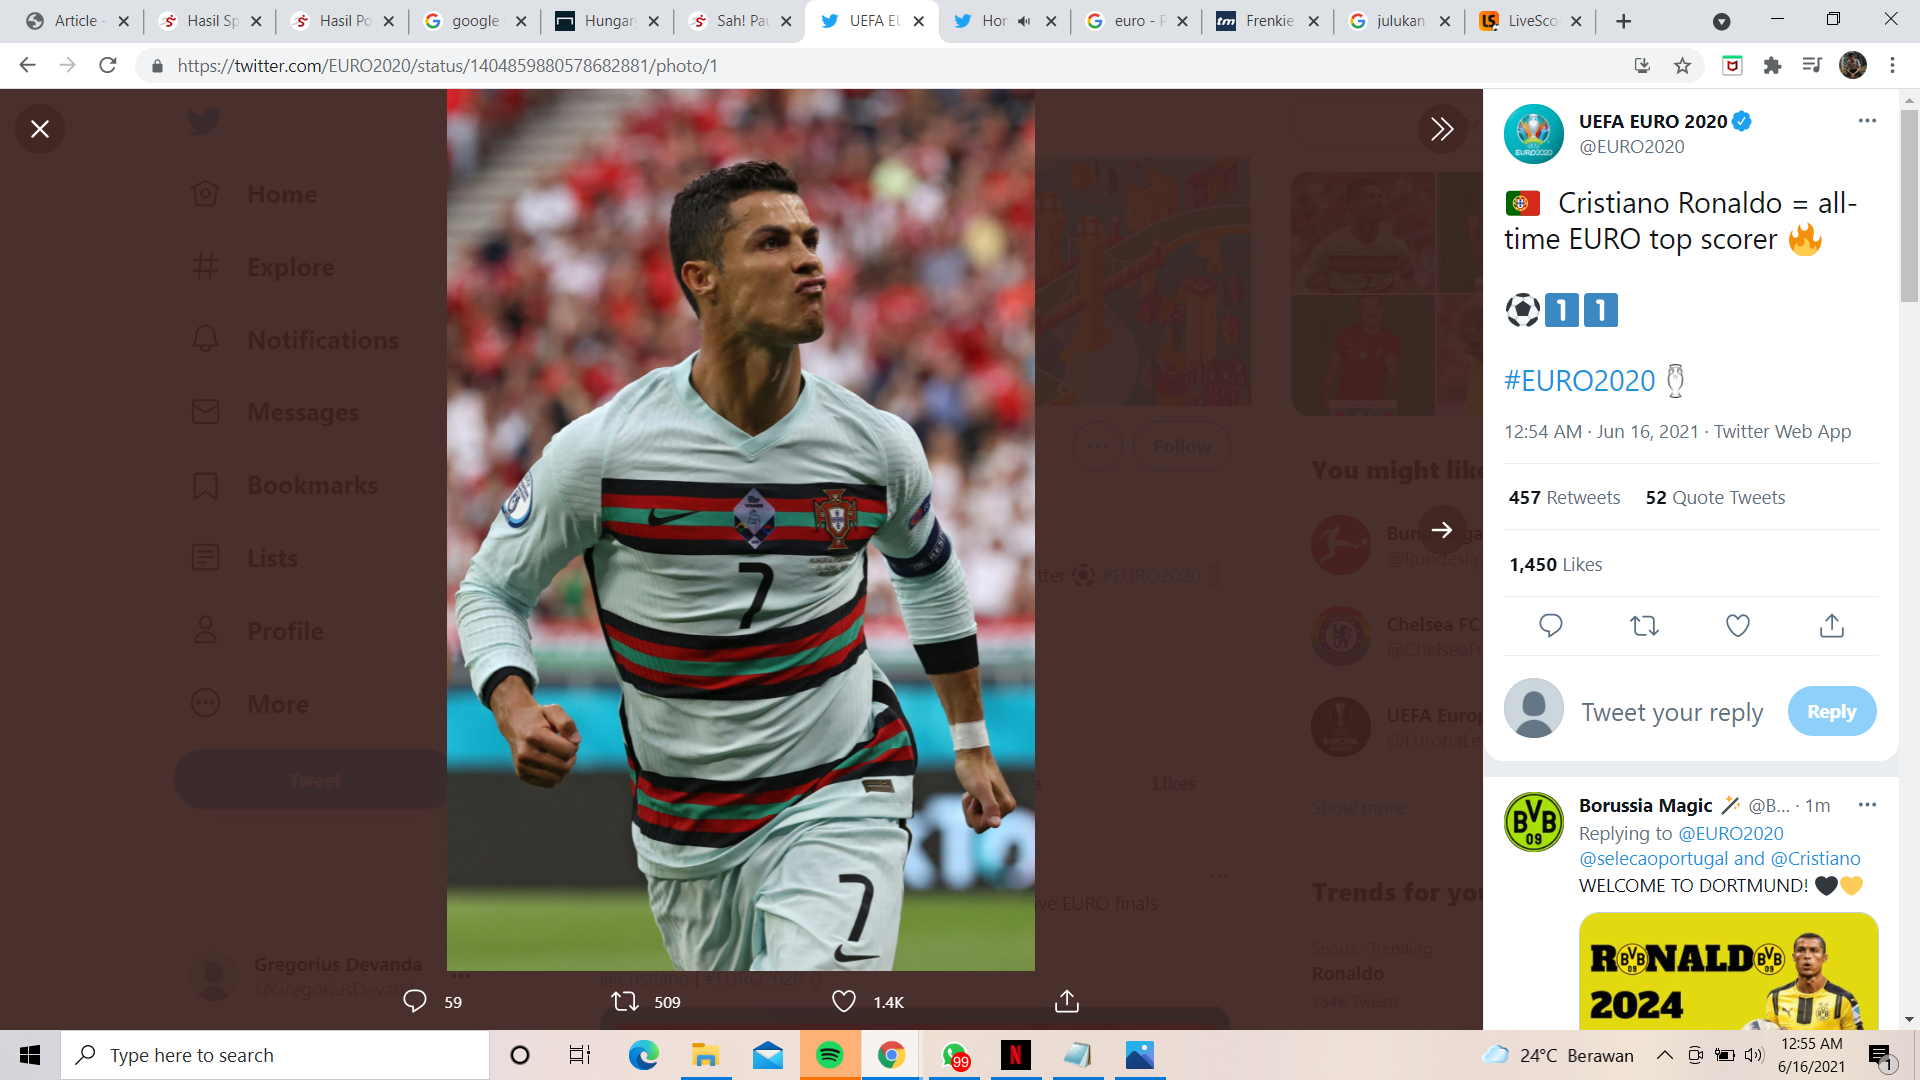 Hasil Hungaria vs Portugal di Piala Eropa 2020: Cristiano Ronaldo Cetak 2 Gol, Patahkan Rekor Platini